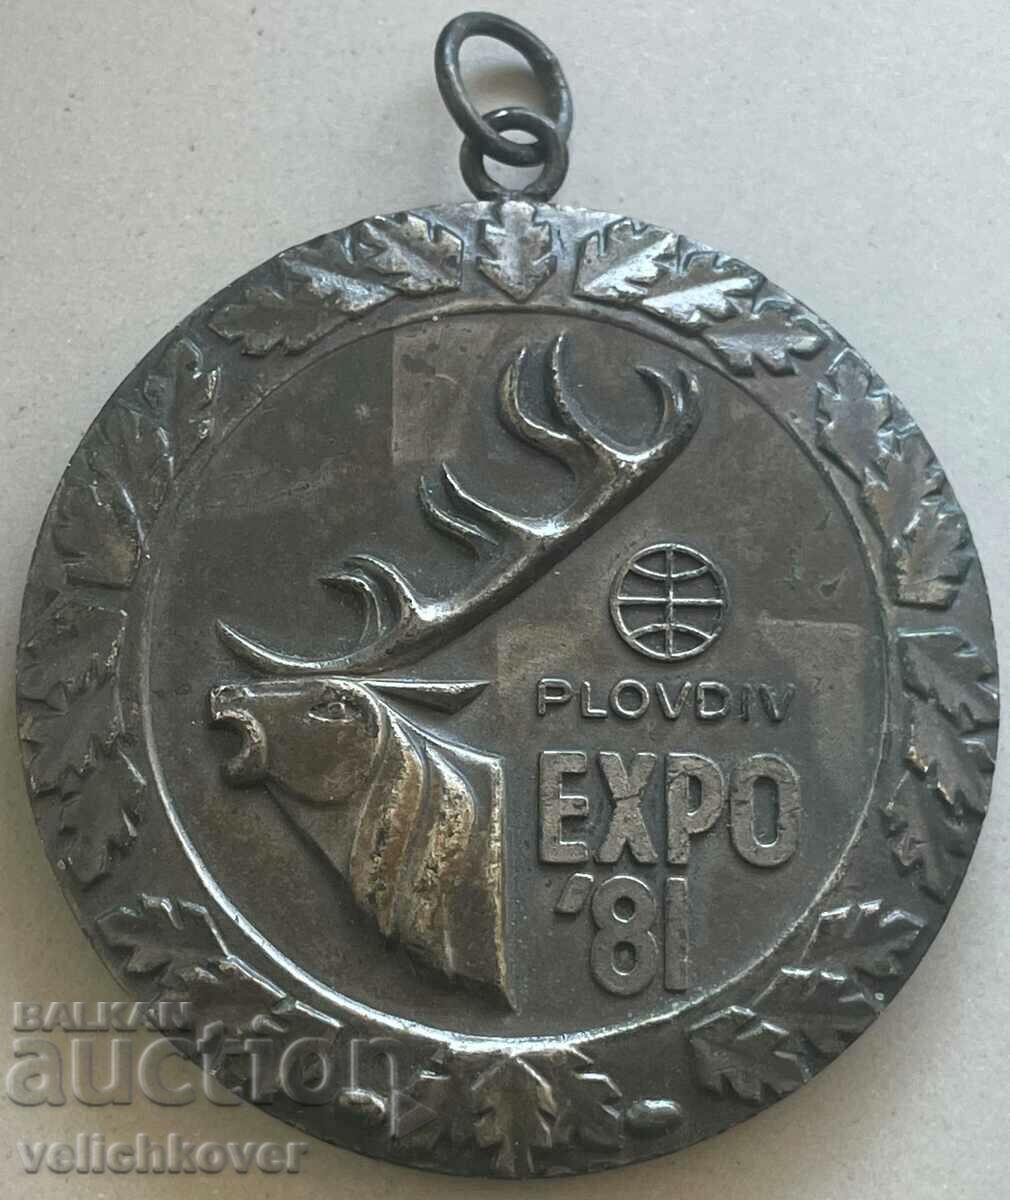 32916 Βουλγαρία Ασημένιο μετάλλιο Παγκόσμια Έκθεση Κυνηγιού Πλόβντιβ